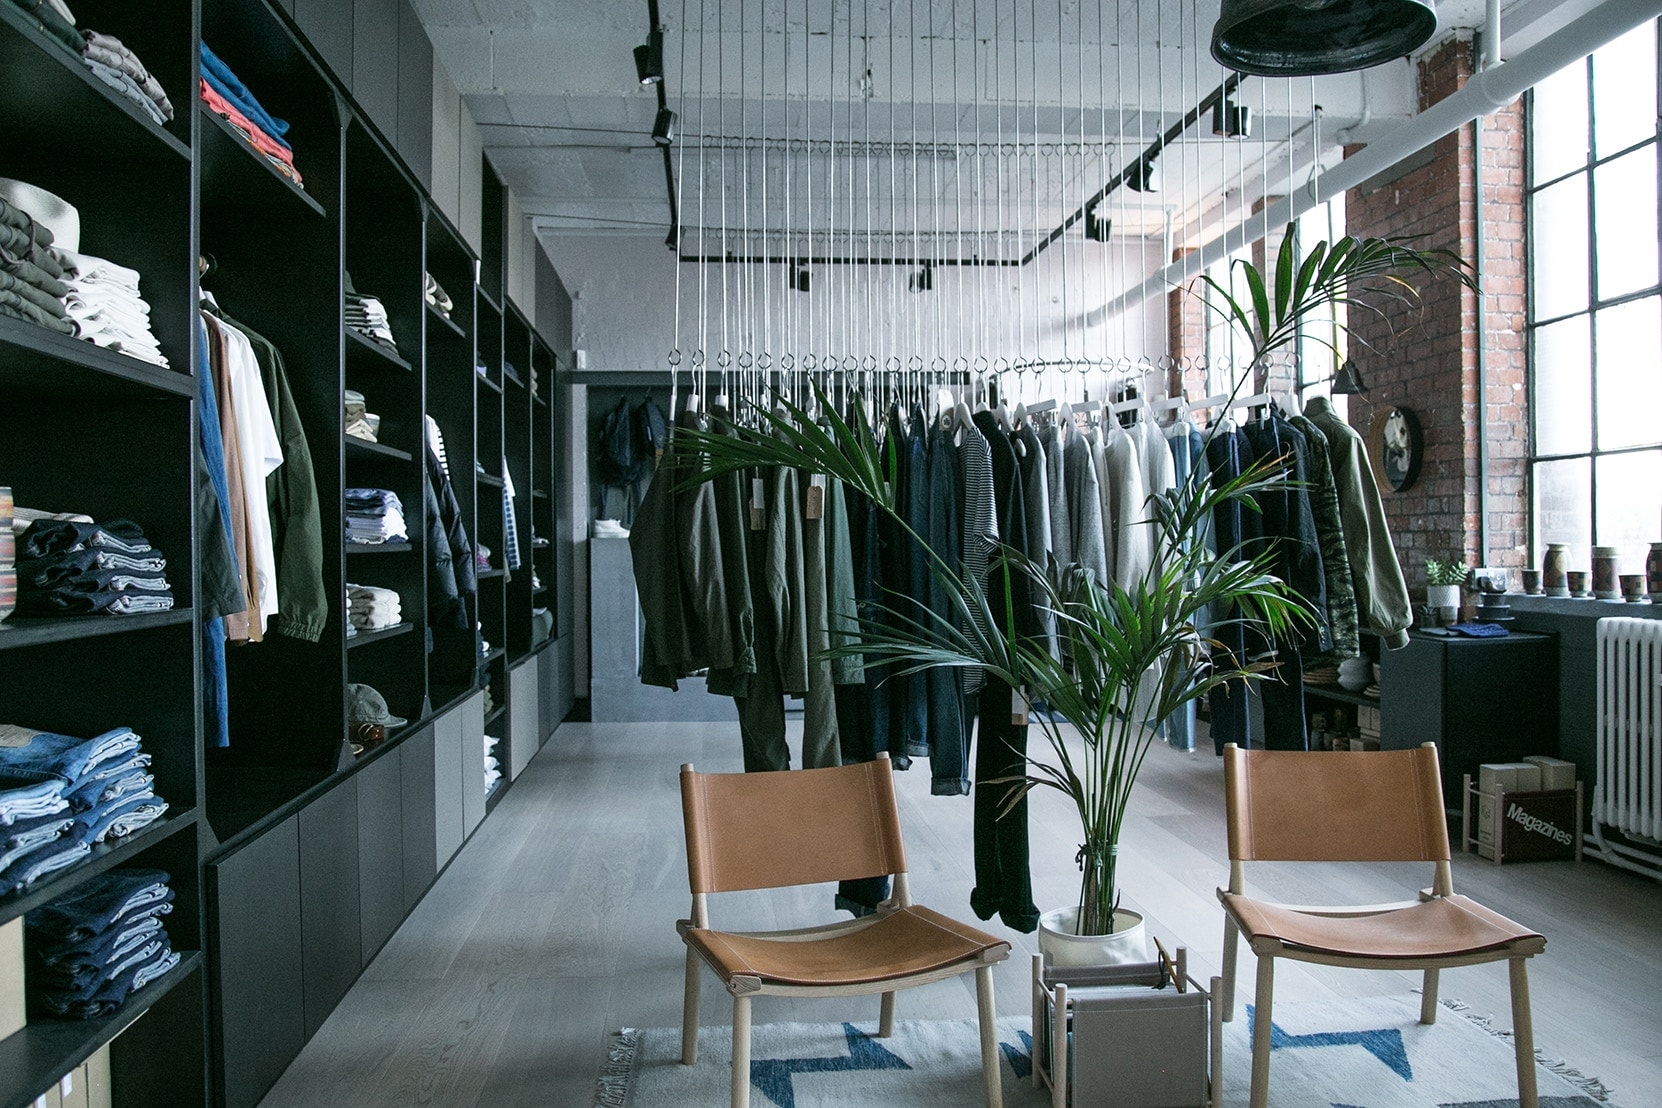 일본 브랜드 영국 런던 편집숍 알파 섀도 페컴 쇼핑 앤드 원더 오디너리 핏츠 2017 London Peckham And Wander Ordinary Fits Japanese Brands Alpha Shadows Select Shop Shopping